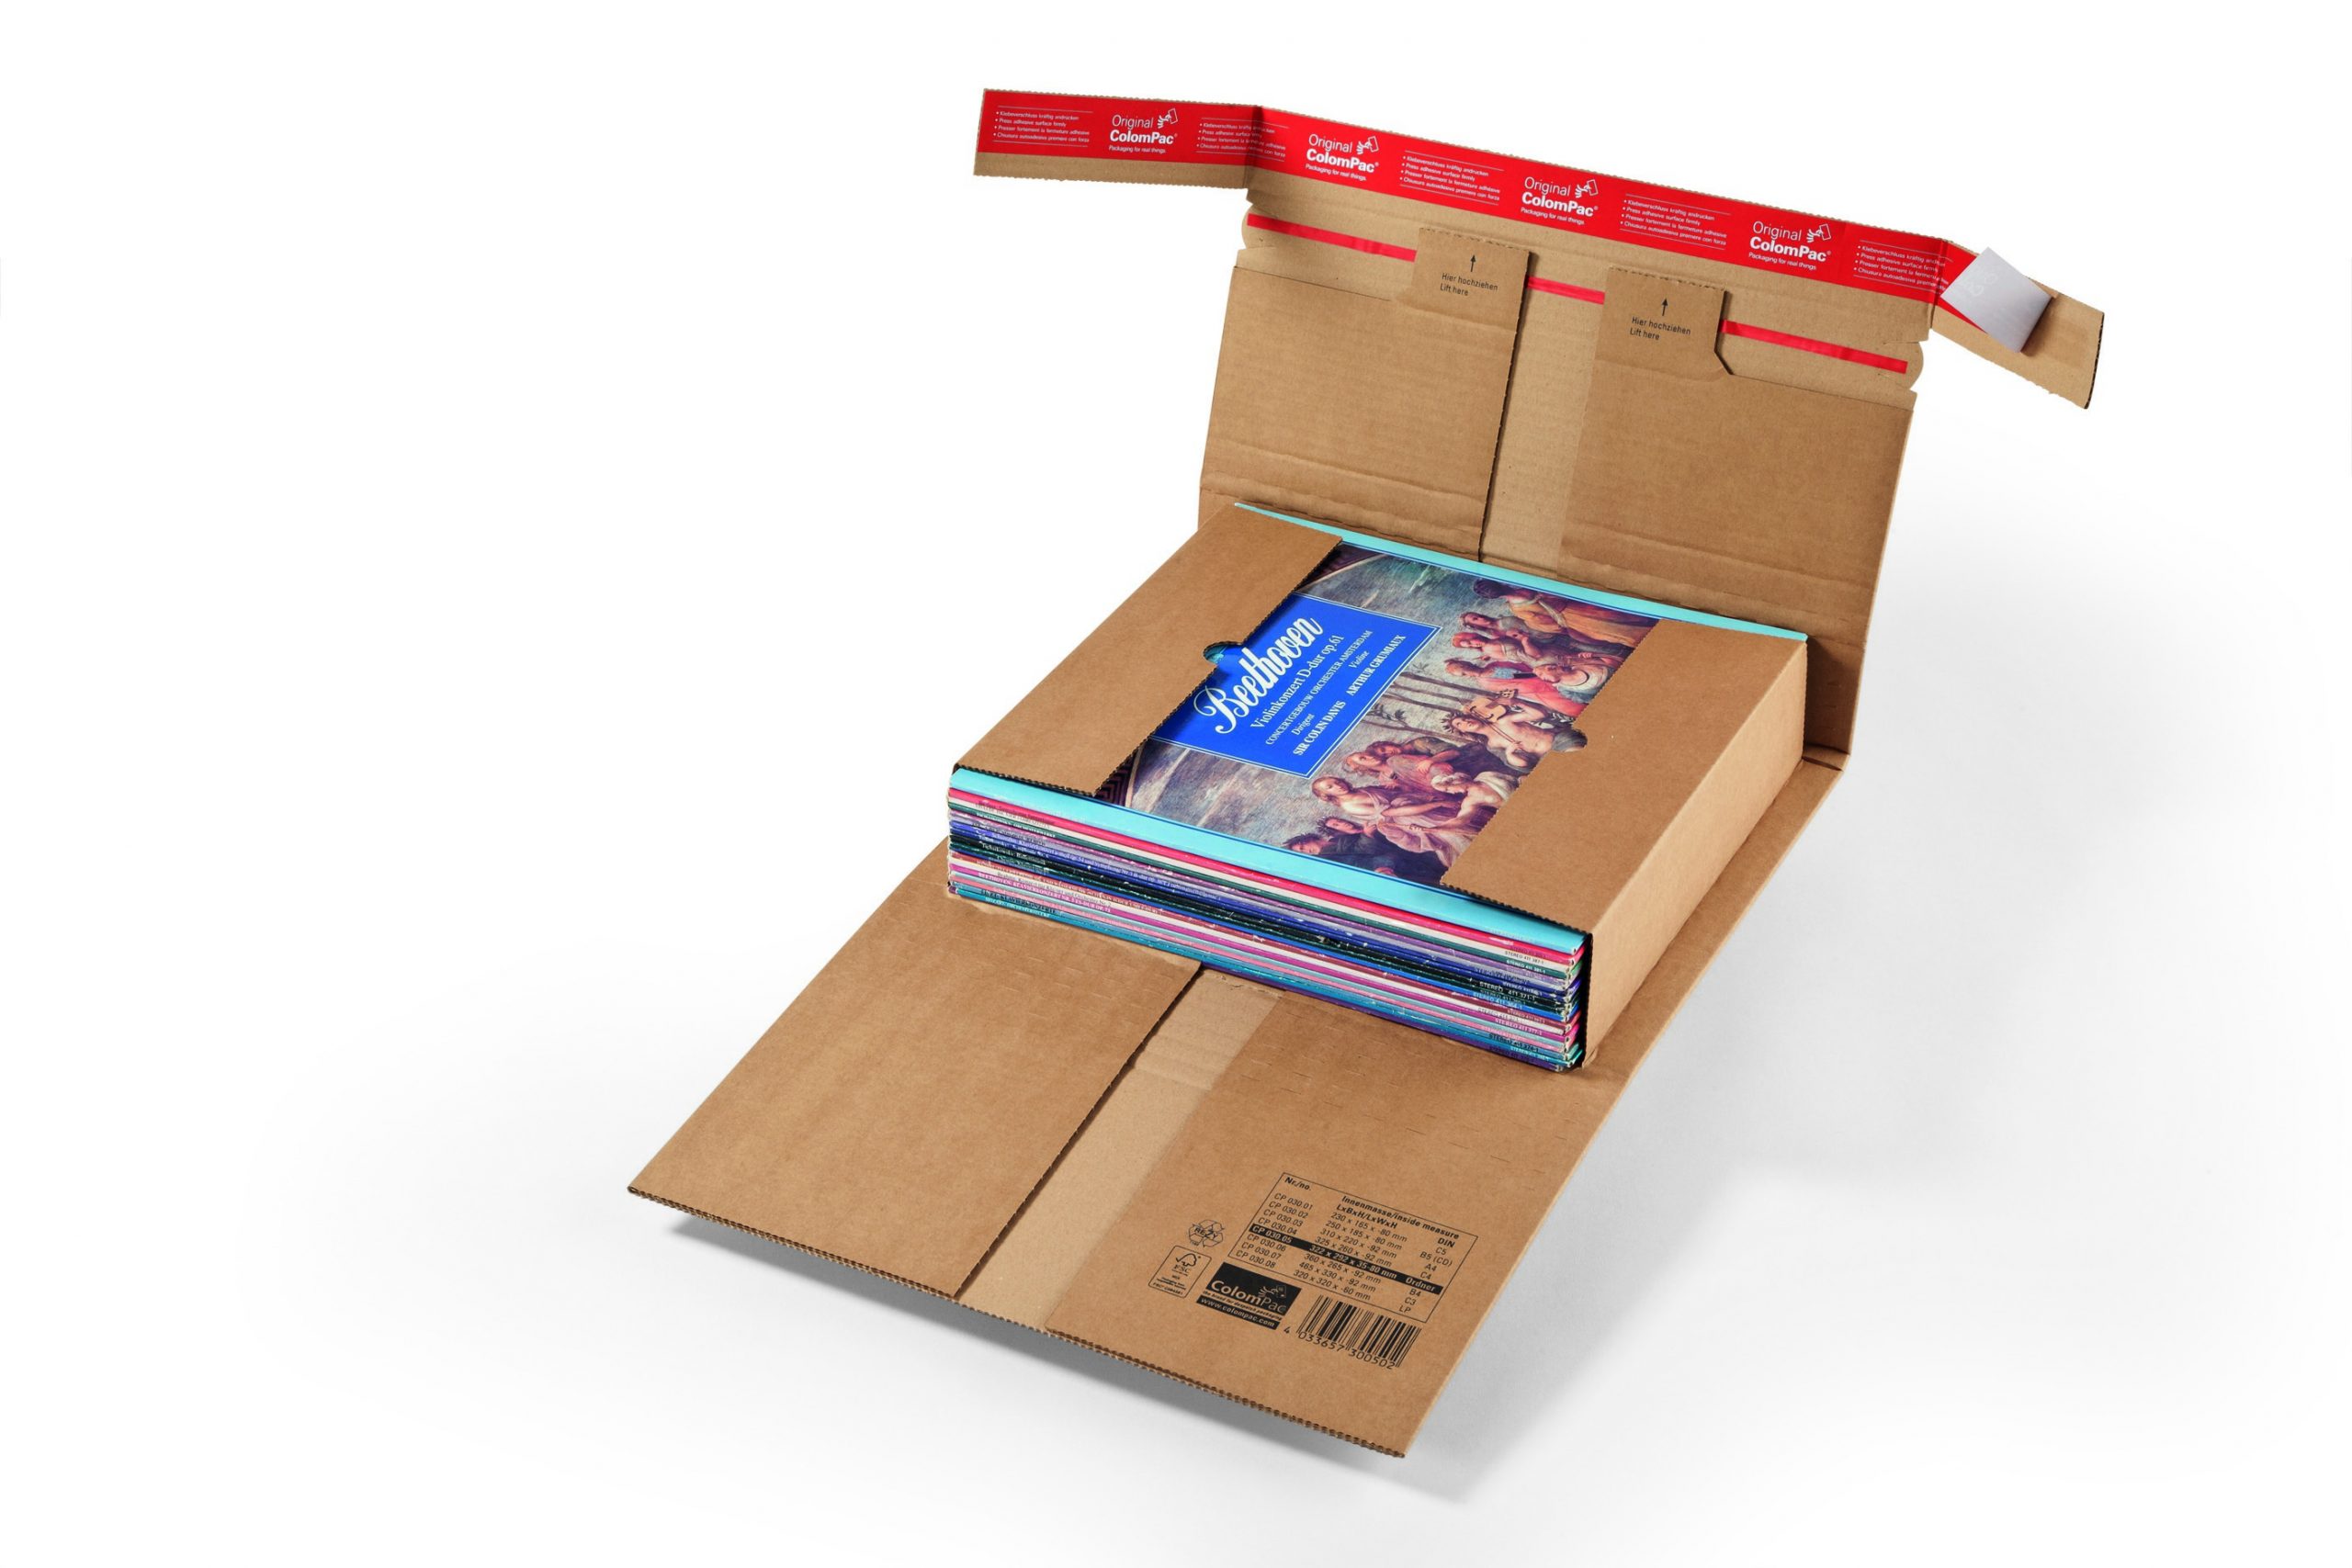 Colompac boek-universele verpakking extra sterk CP 30.06